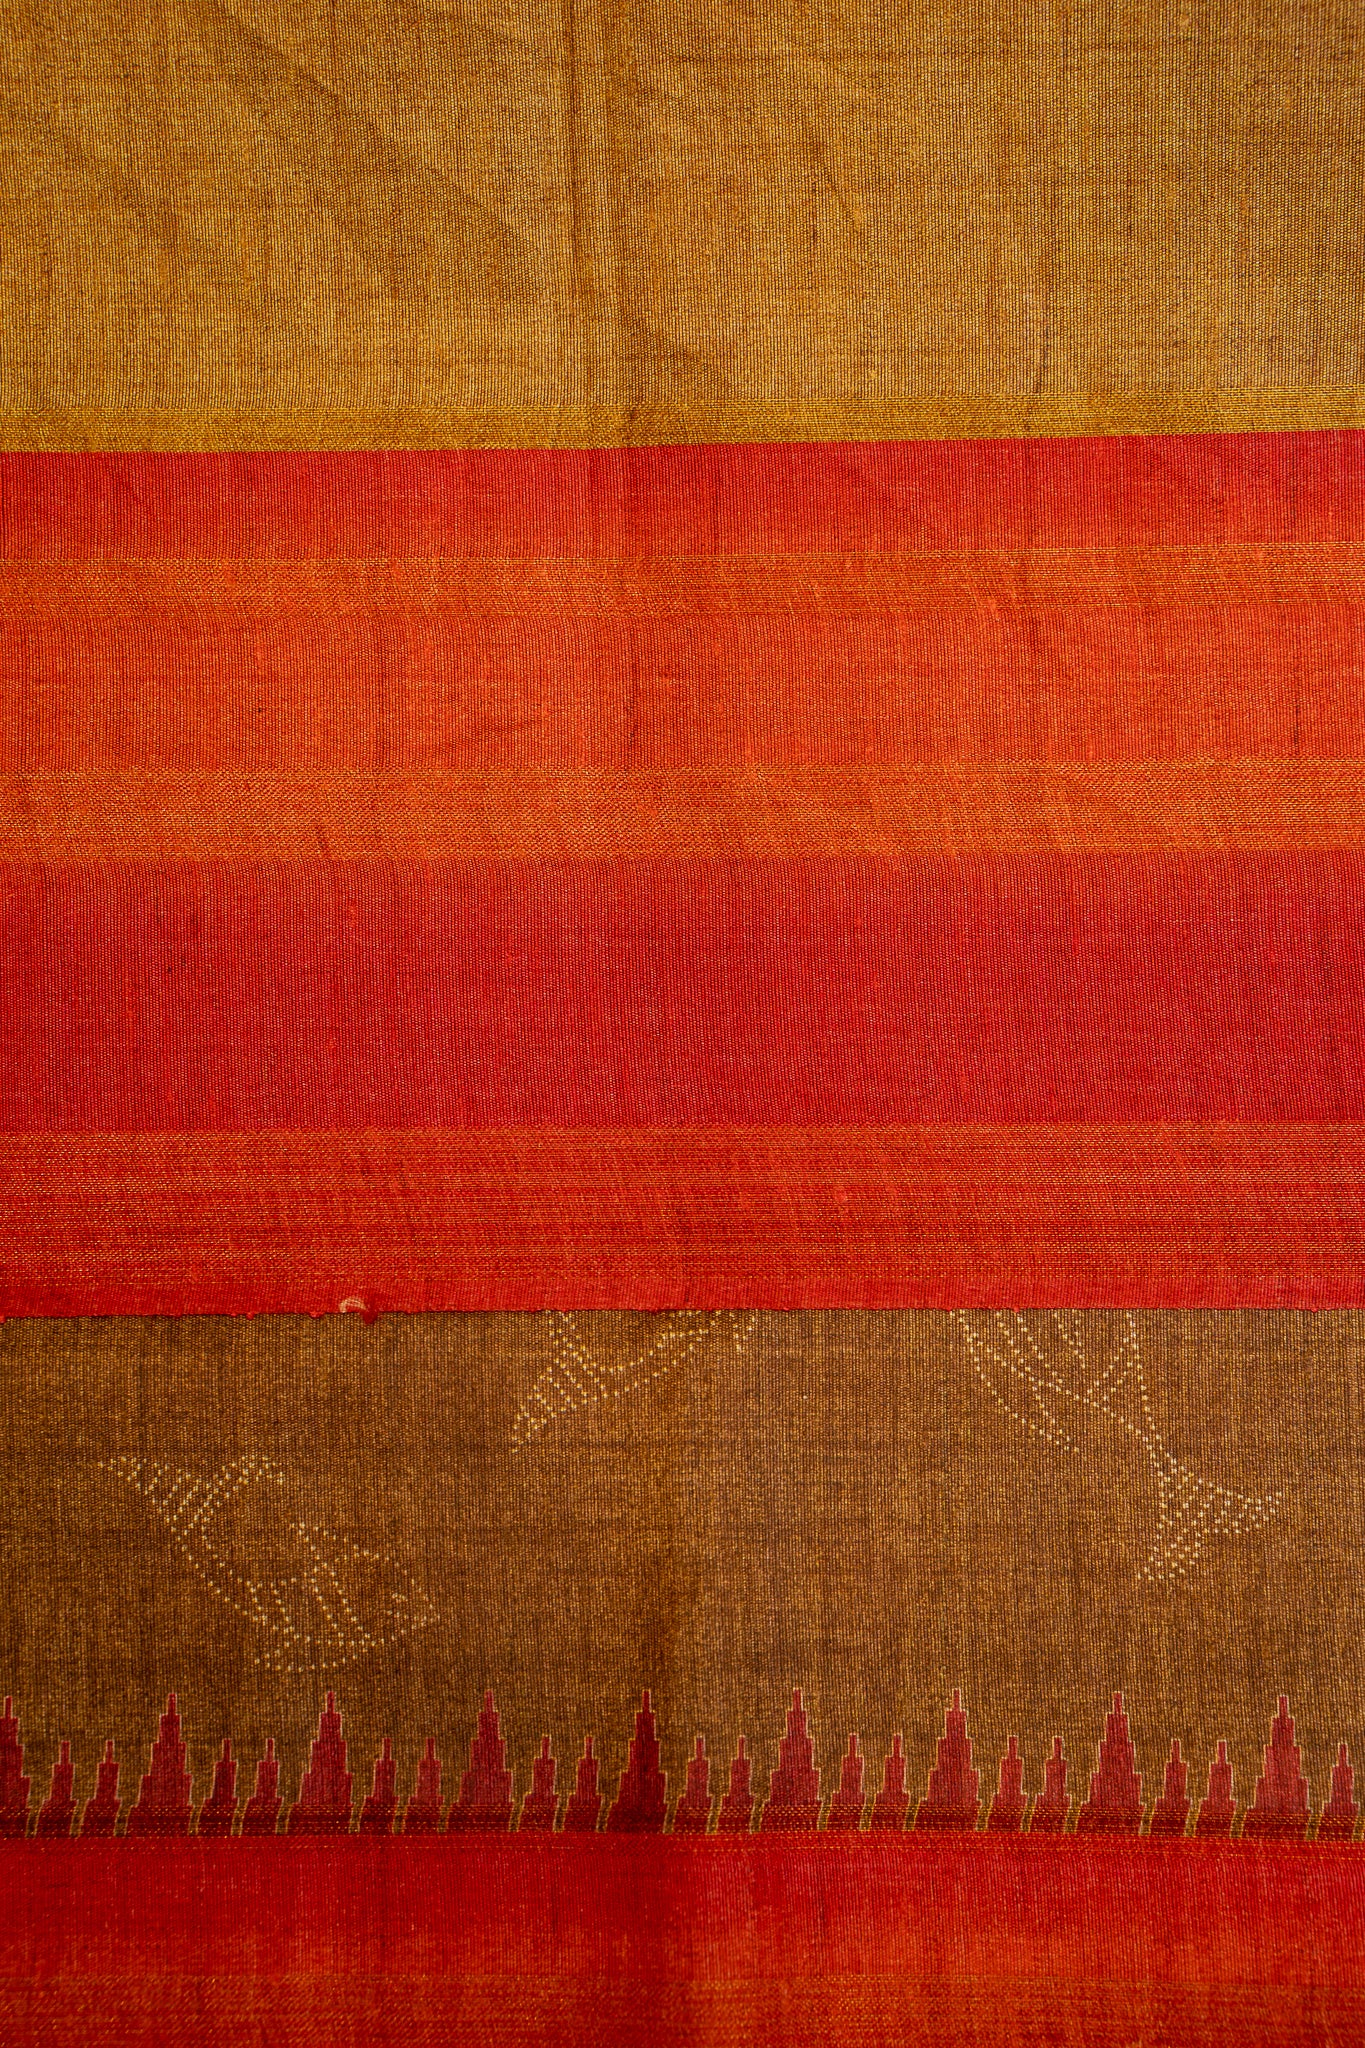 Brown and Orange Fish Printed Bhagalpur Tussar Sari - Clio Silks